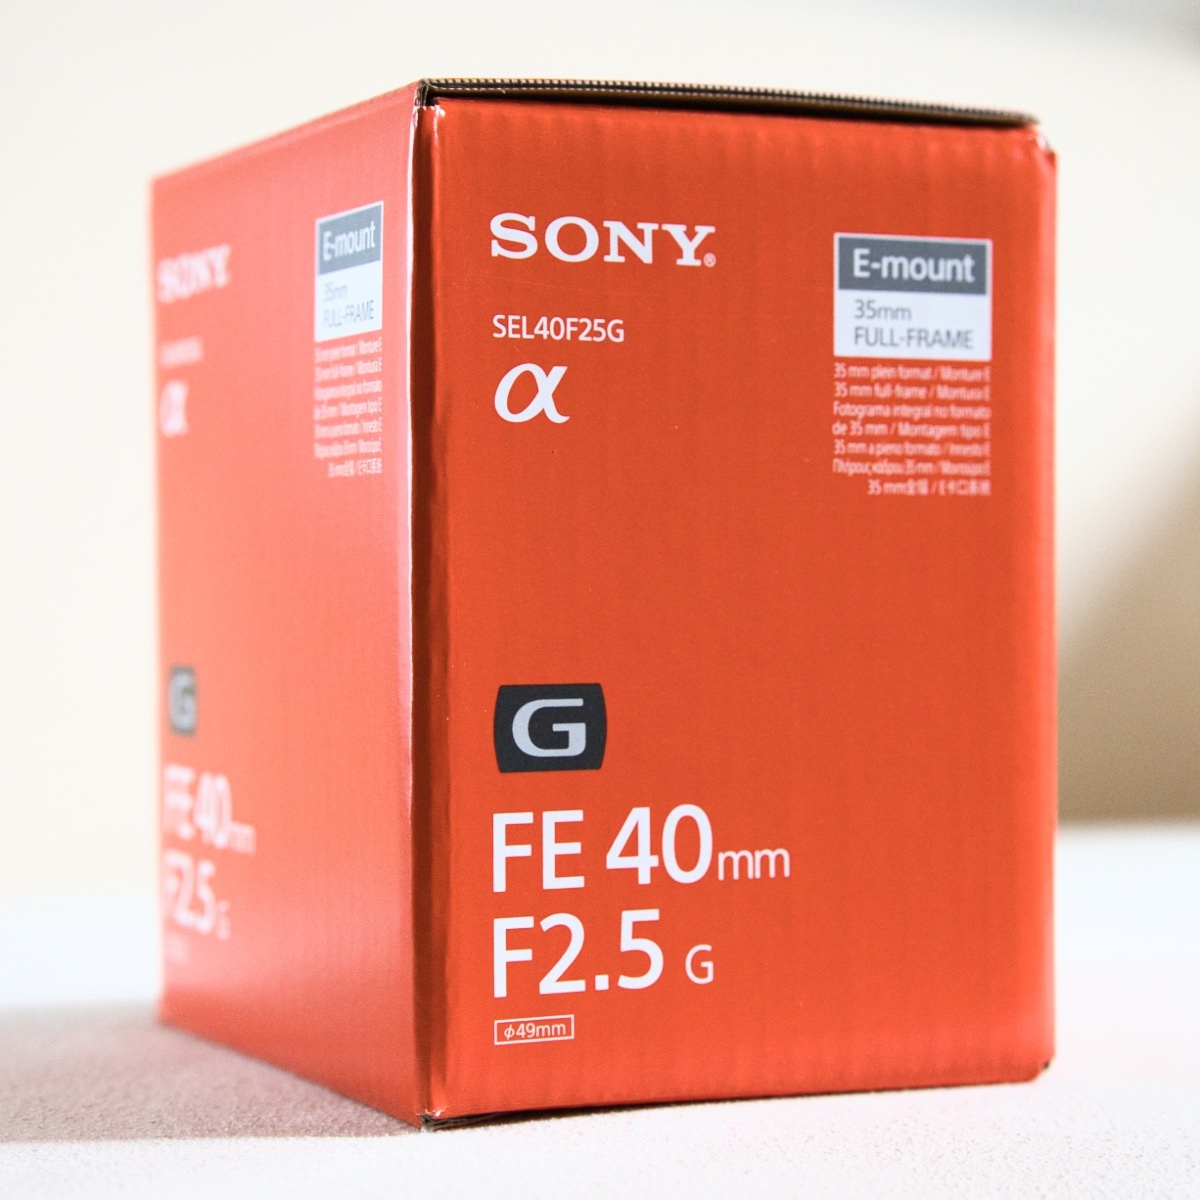 破格値下げ】 【美品・送料無料】FE 40mm F2.5 G (SEL40F25G) (ソニーE